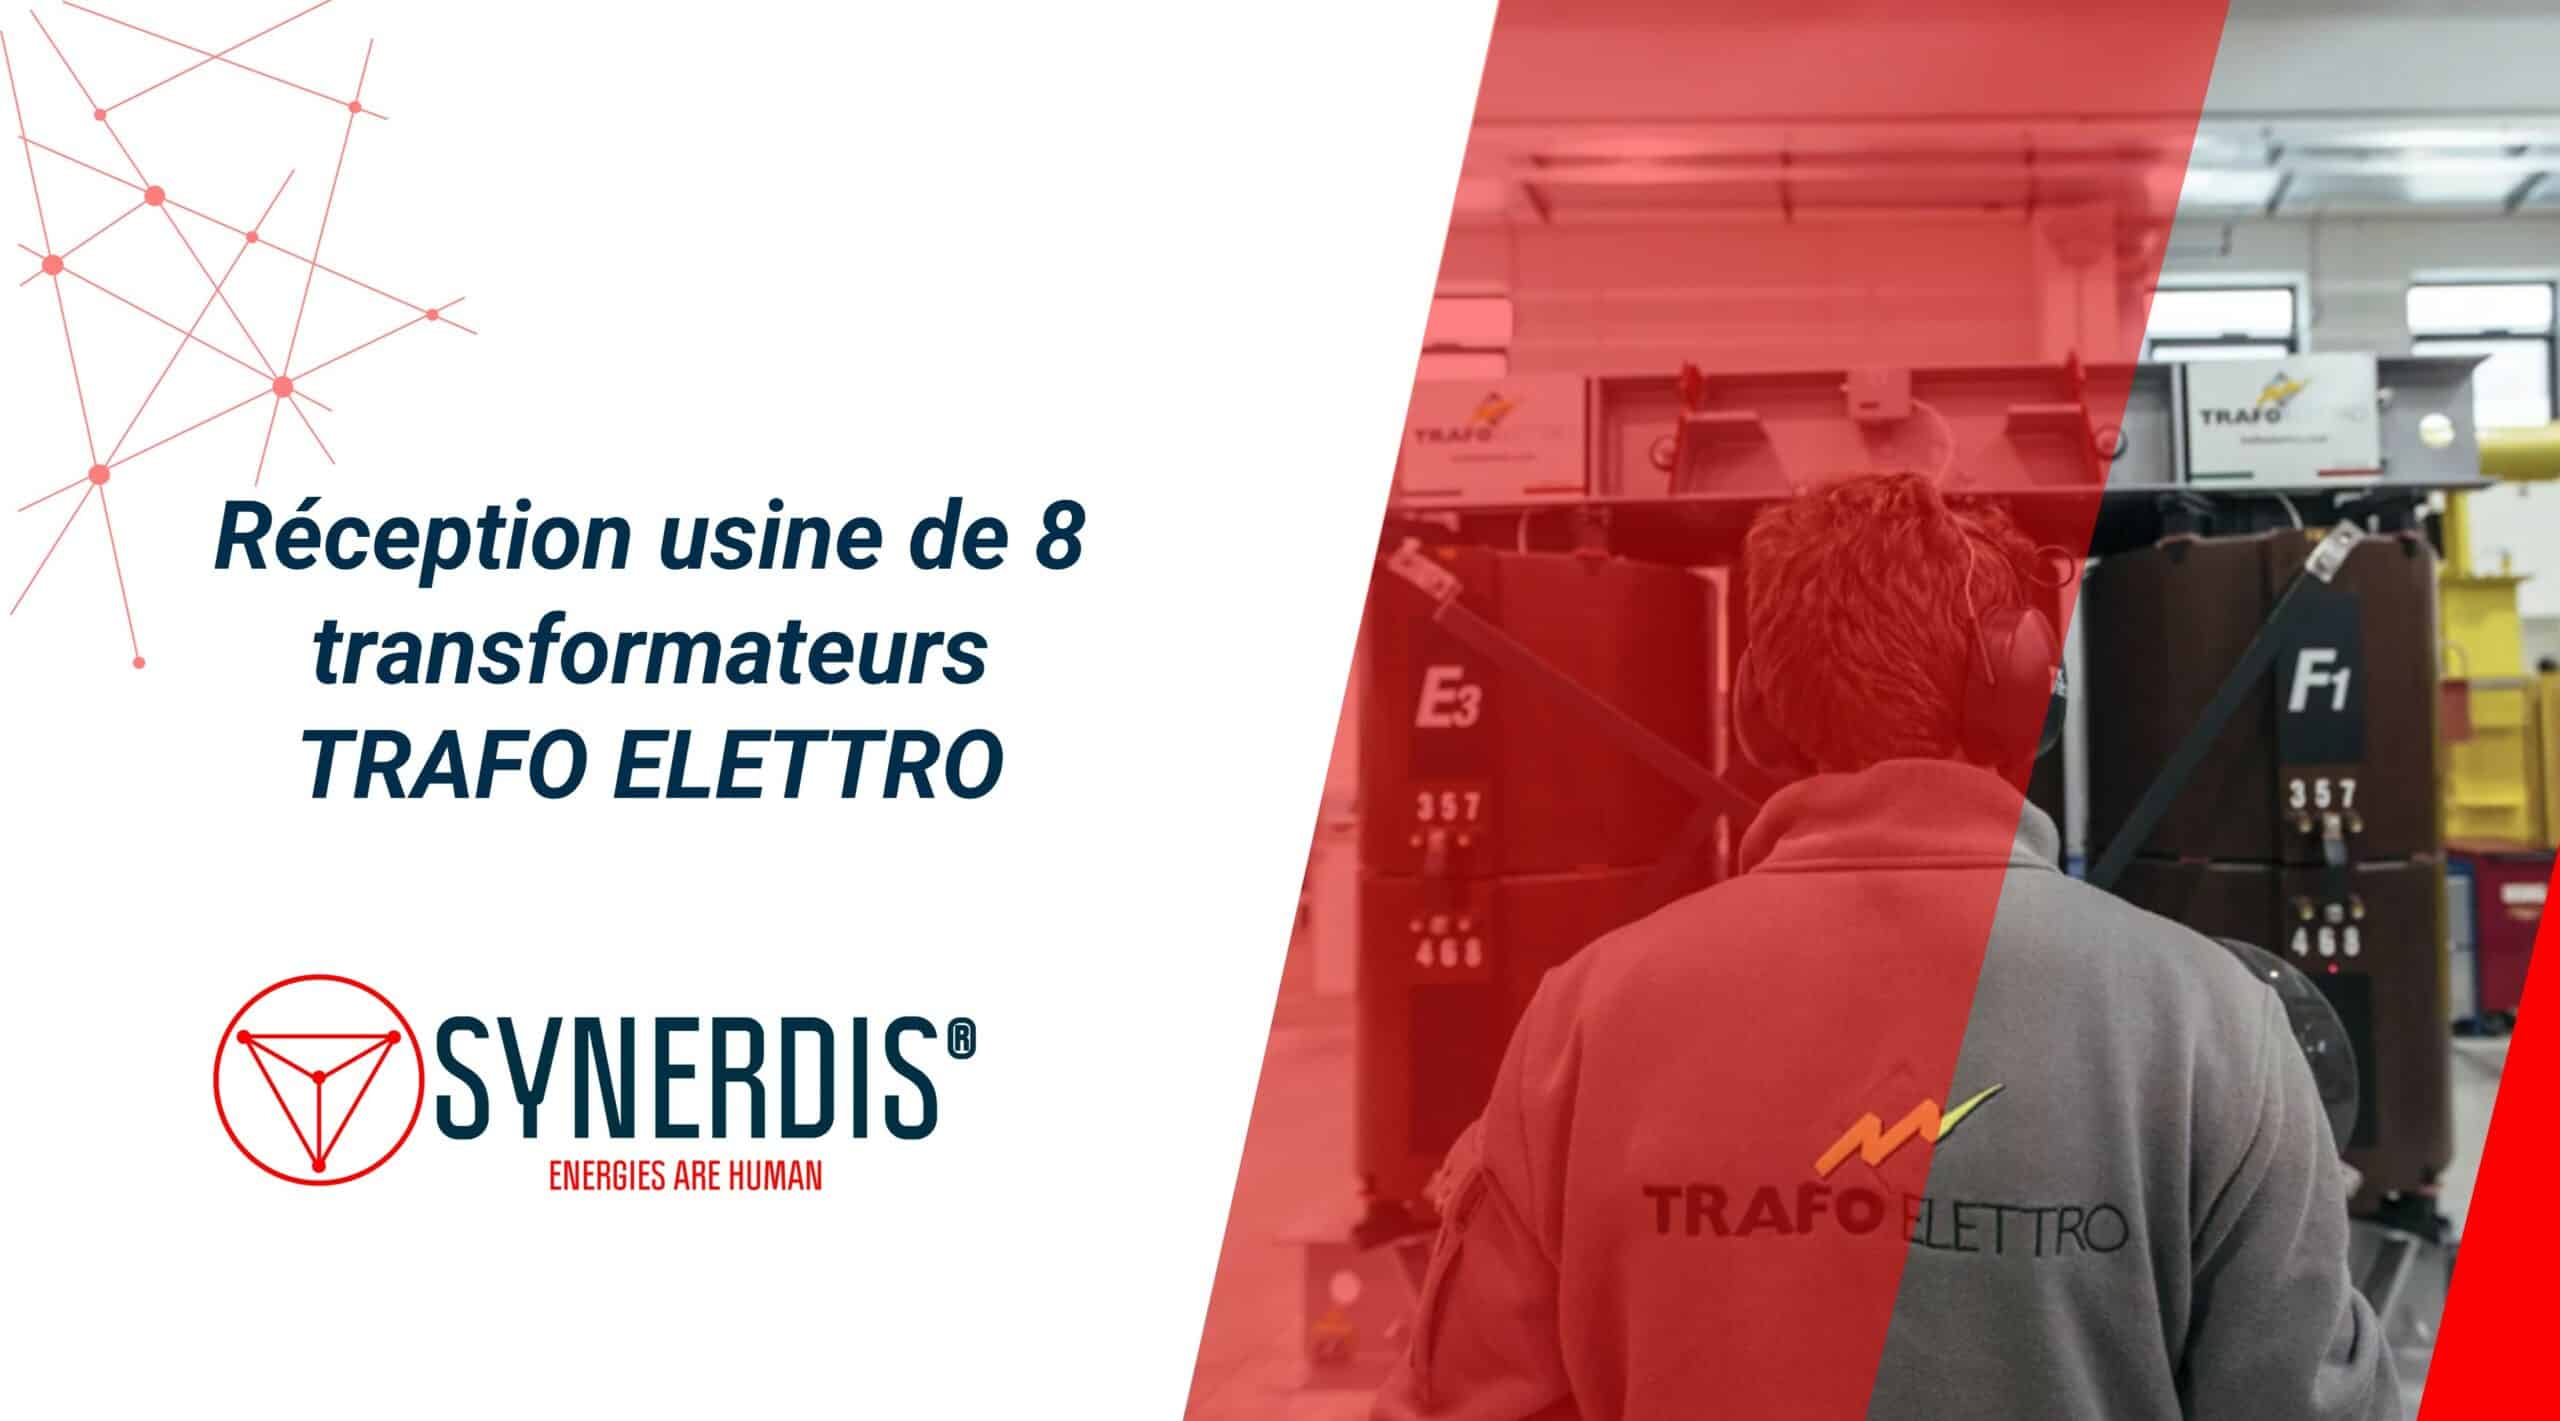 Proyecto Synerdis: recepción en fábrica de 8 transformadores Trafo ELETTRO